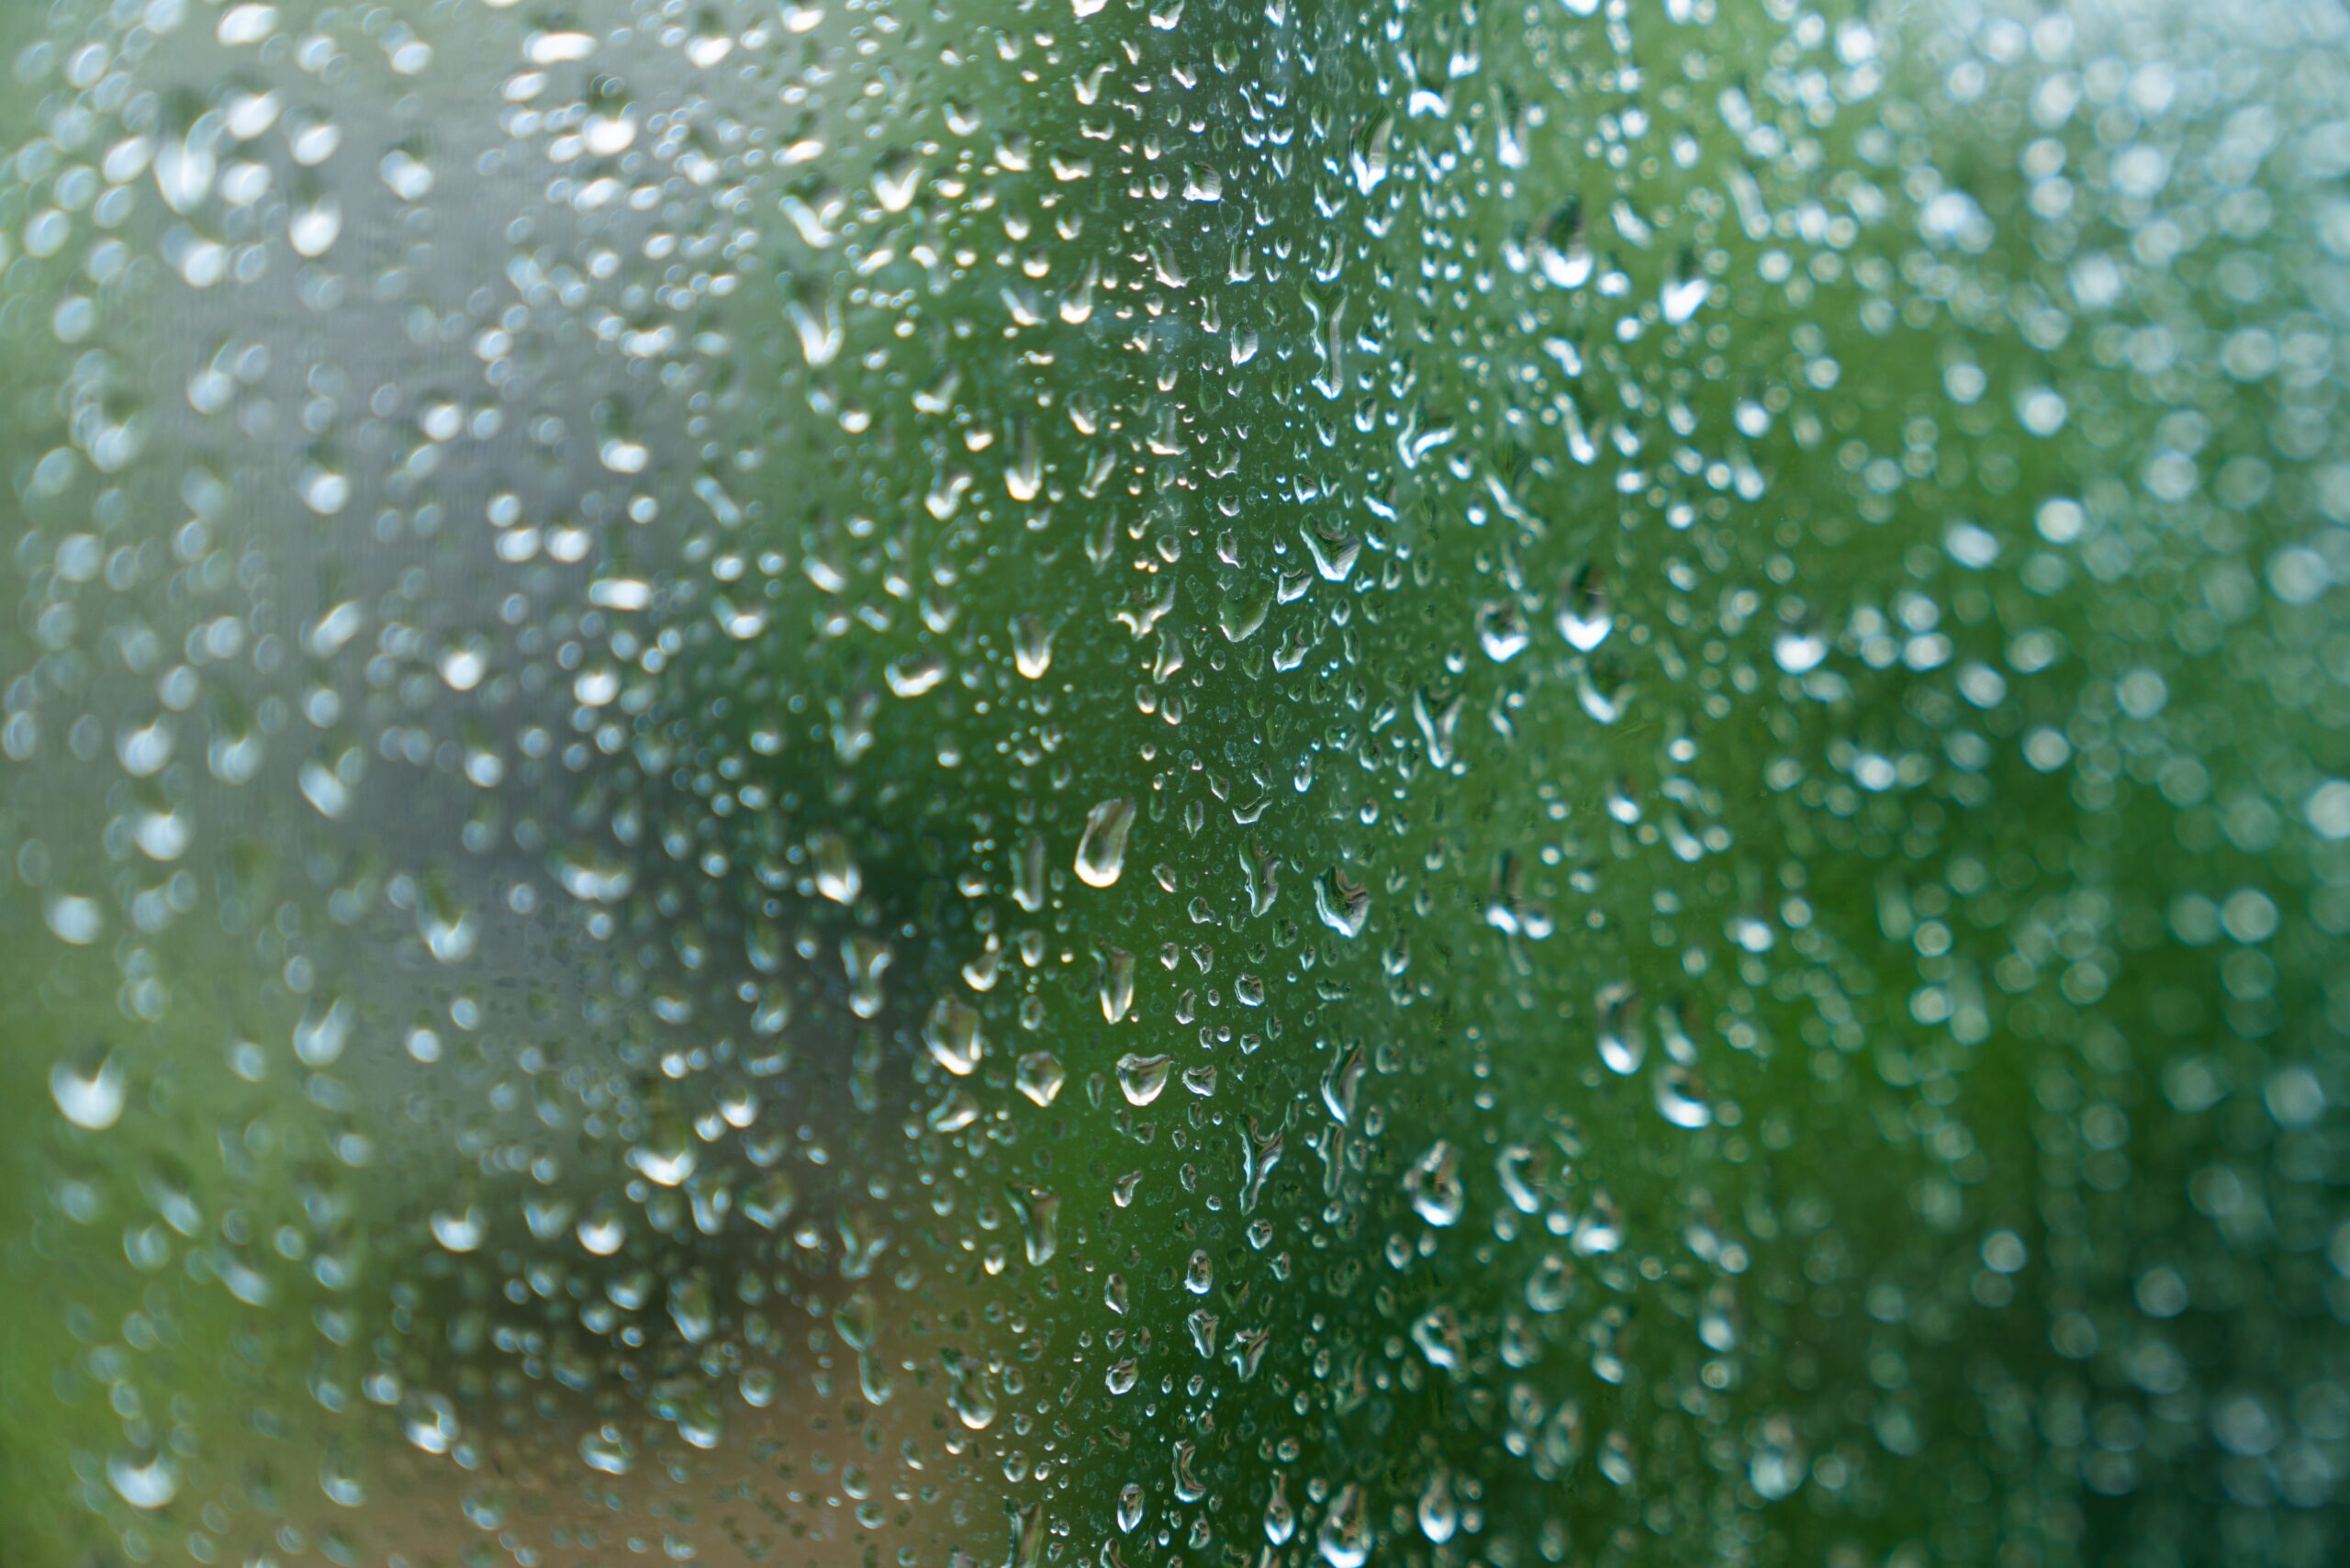 Condensation in a van